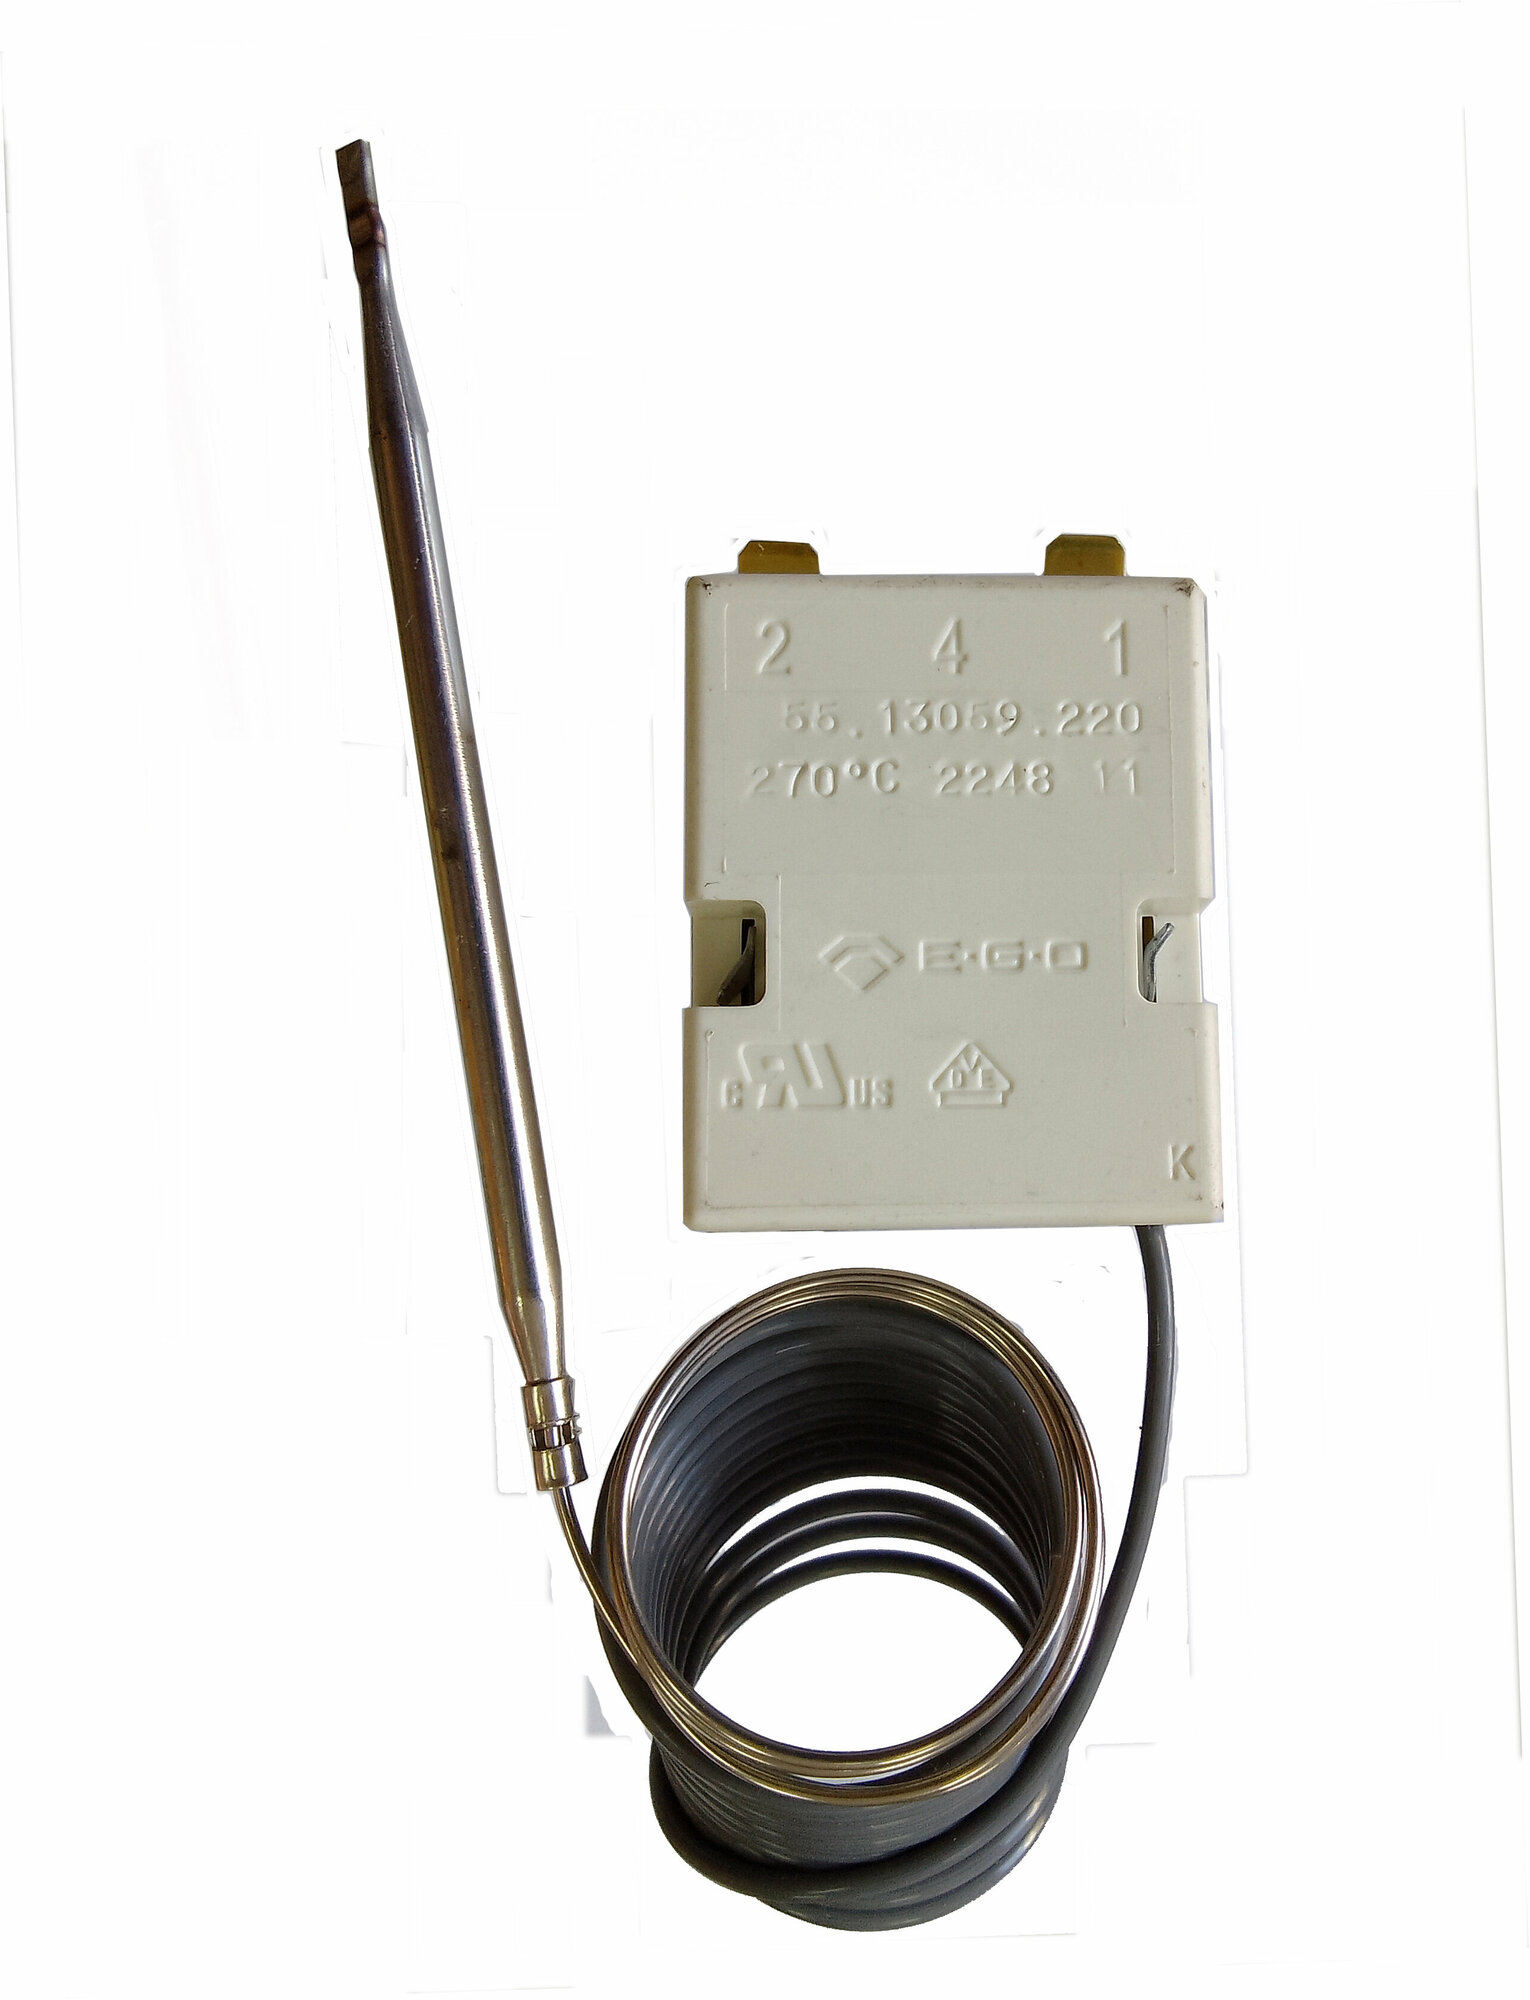 Терморегулятор EGO 55.13059.220 50° - 270°С (Оригинал) для плит ЭП, жарочных шкафов ШЖЭ, сковород ЭСК Abat 120000006818